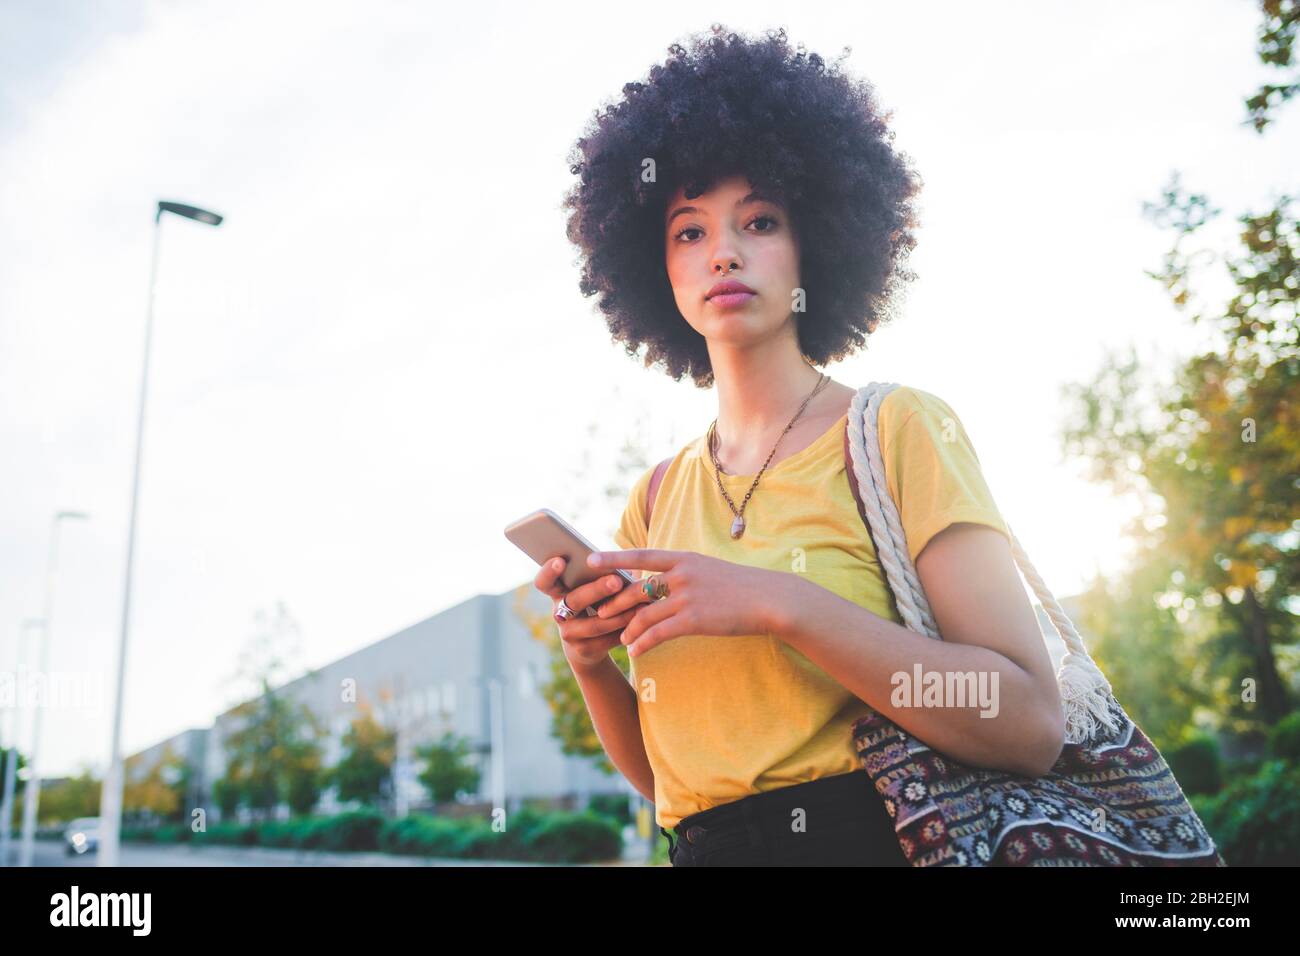 Porträt einer jungen Frau mit Afro-Frisur in der Stadt Stockfoto